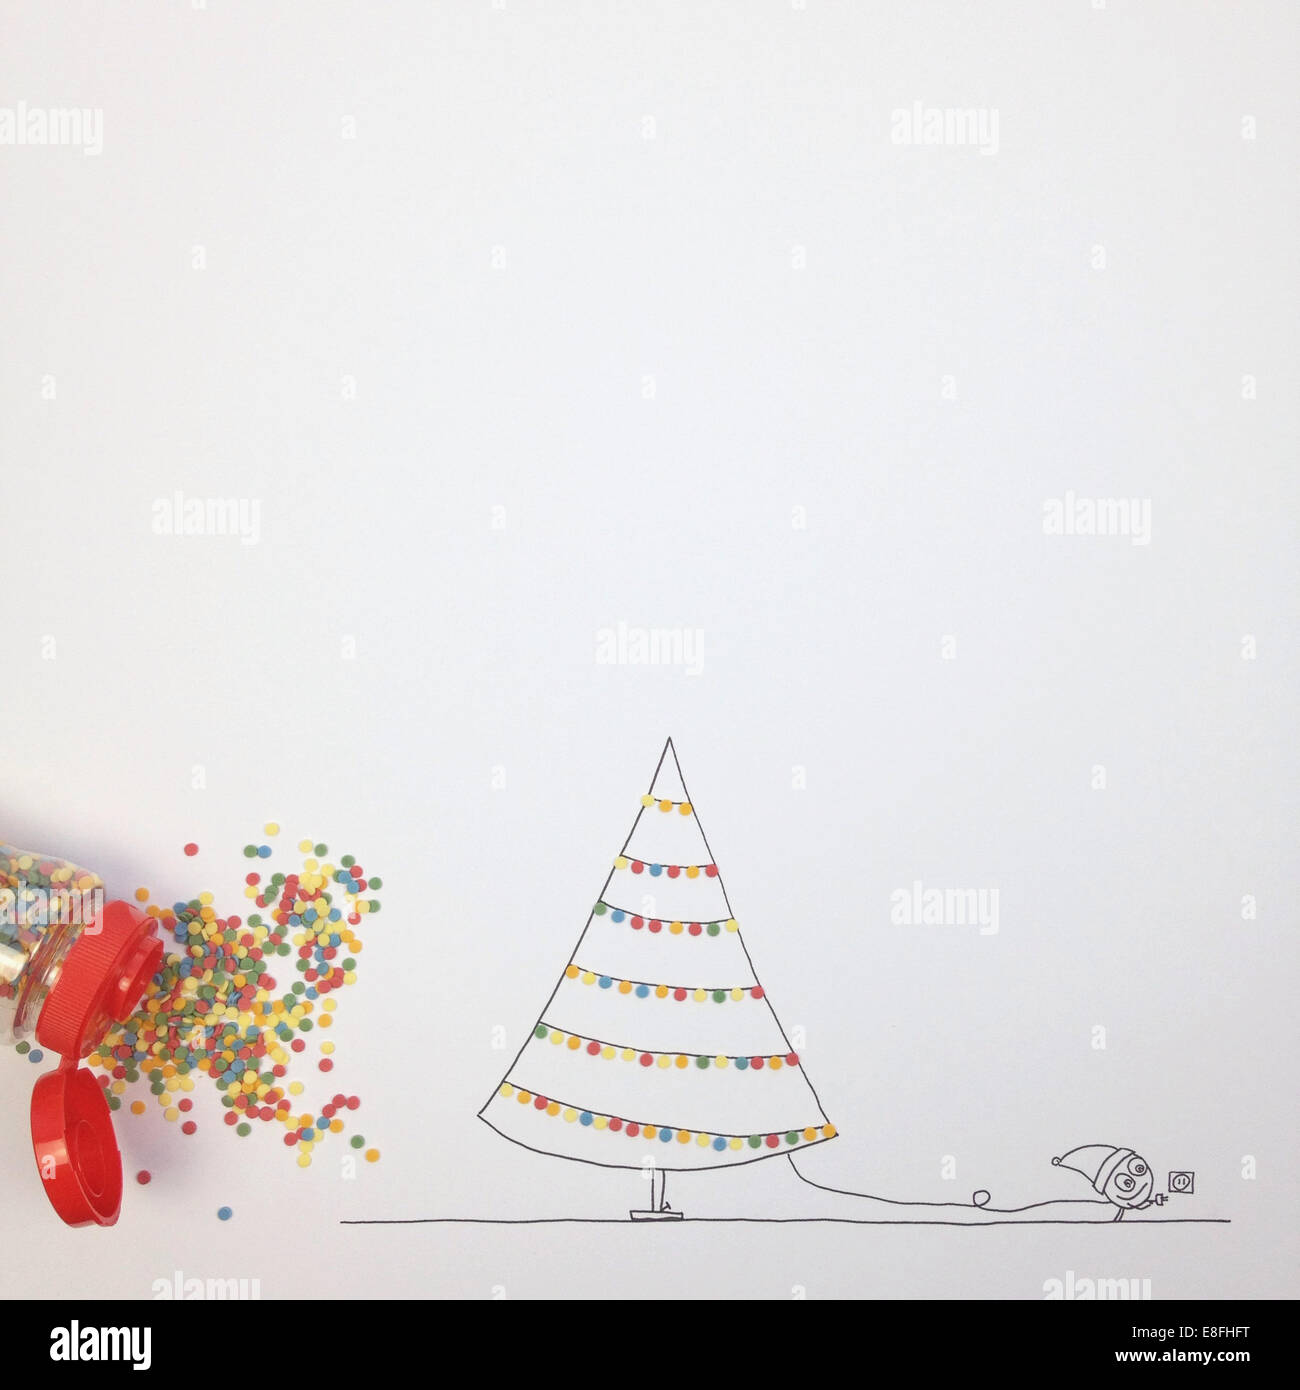 Personnage fictif conceptuel décorant arbre de Noël avec des lumières de fées Banque D'Images